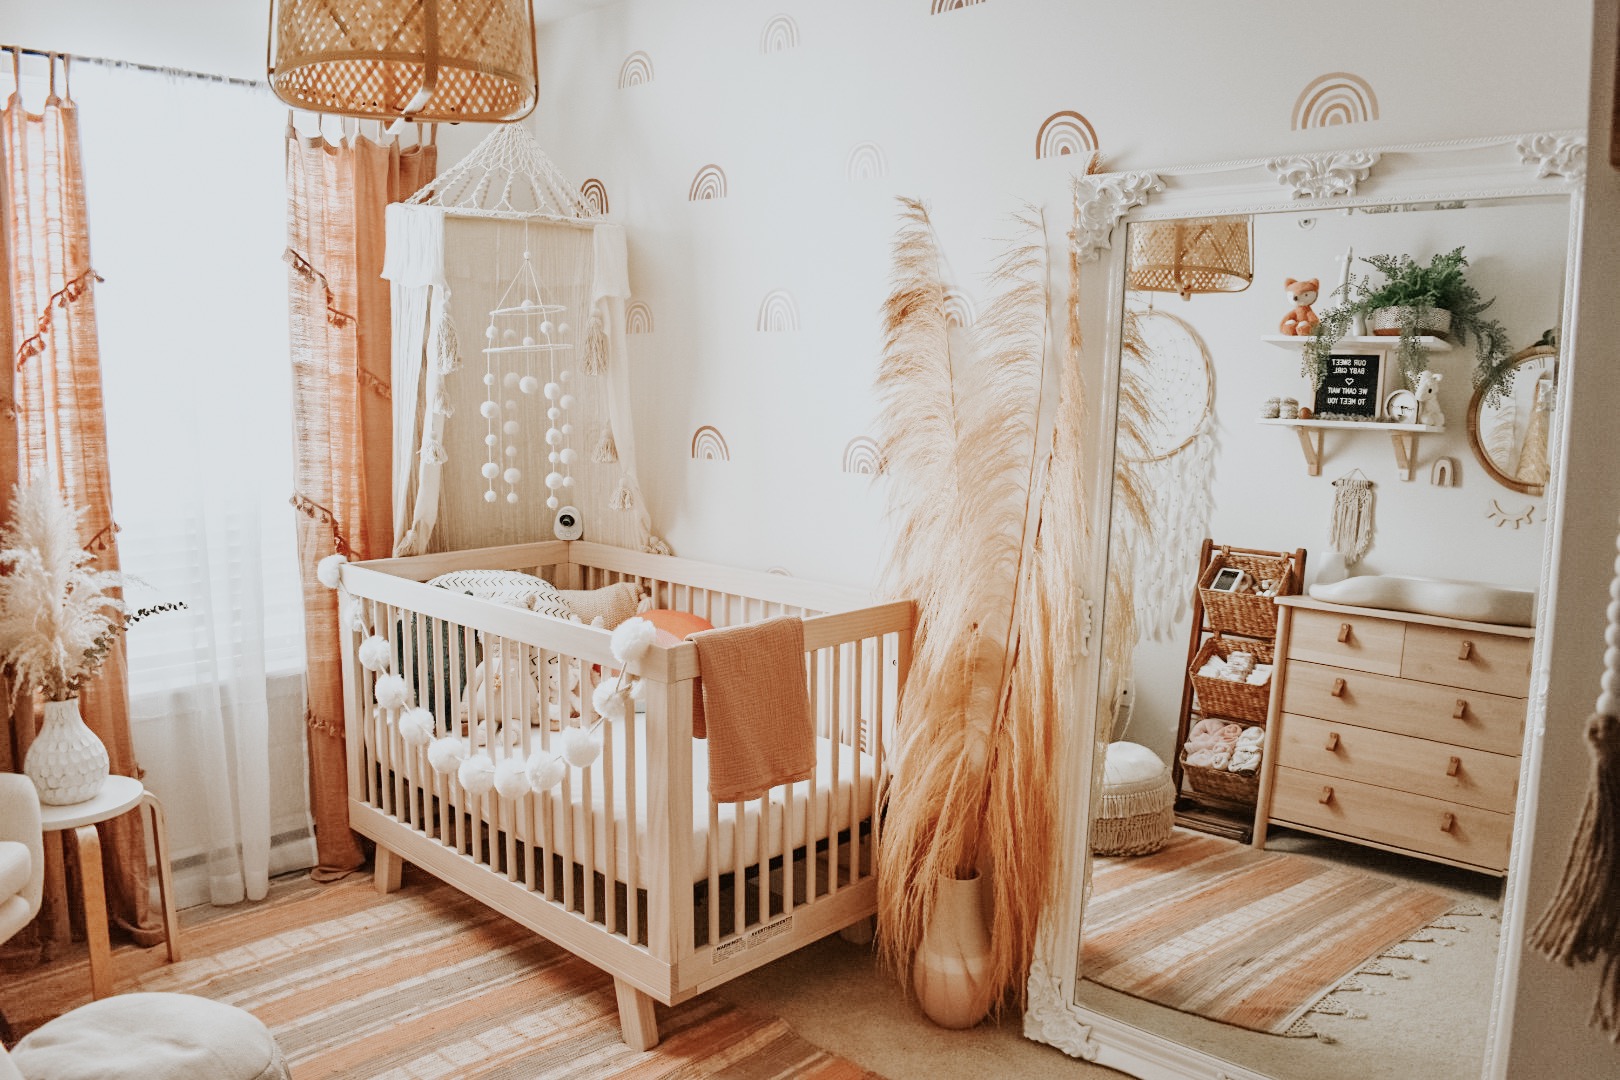 Baby room decor ideas - boho style